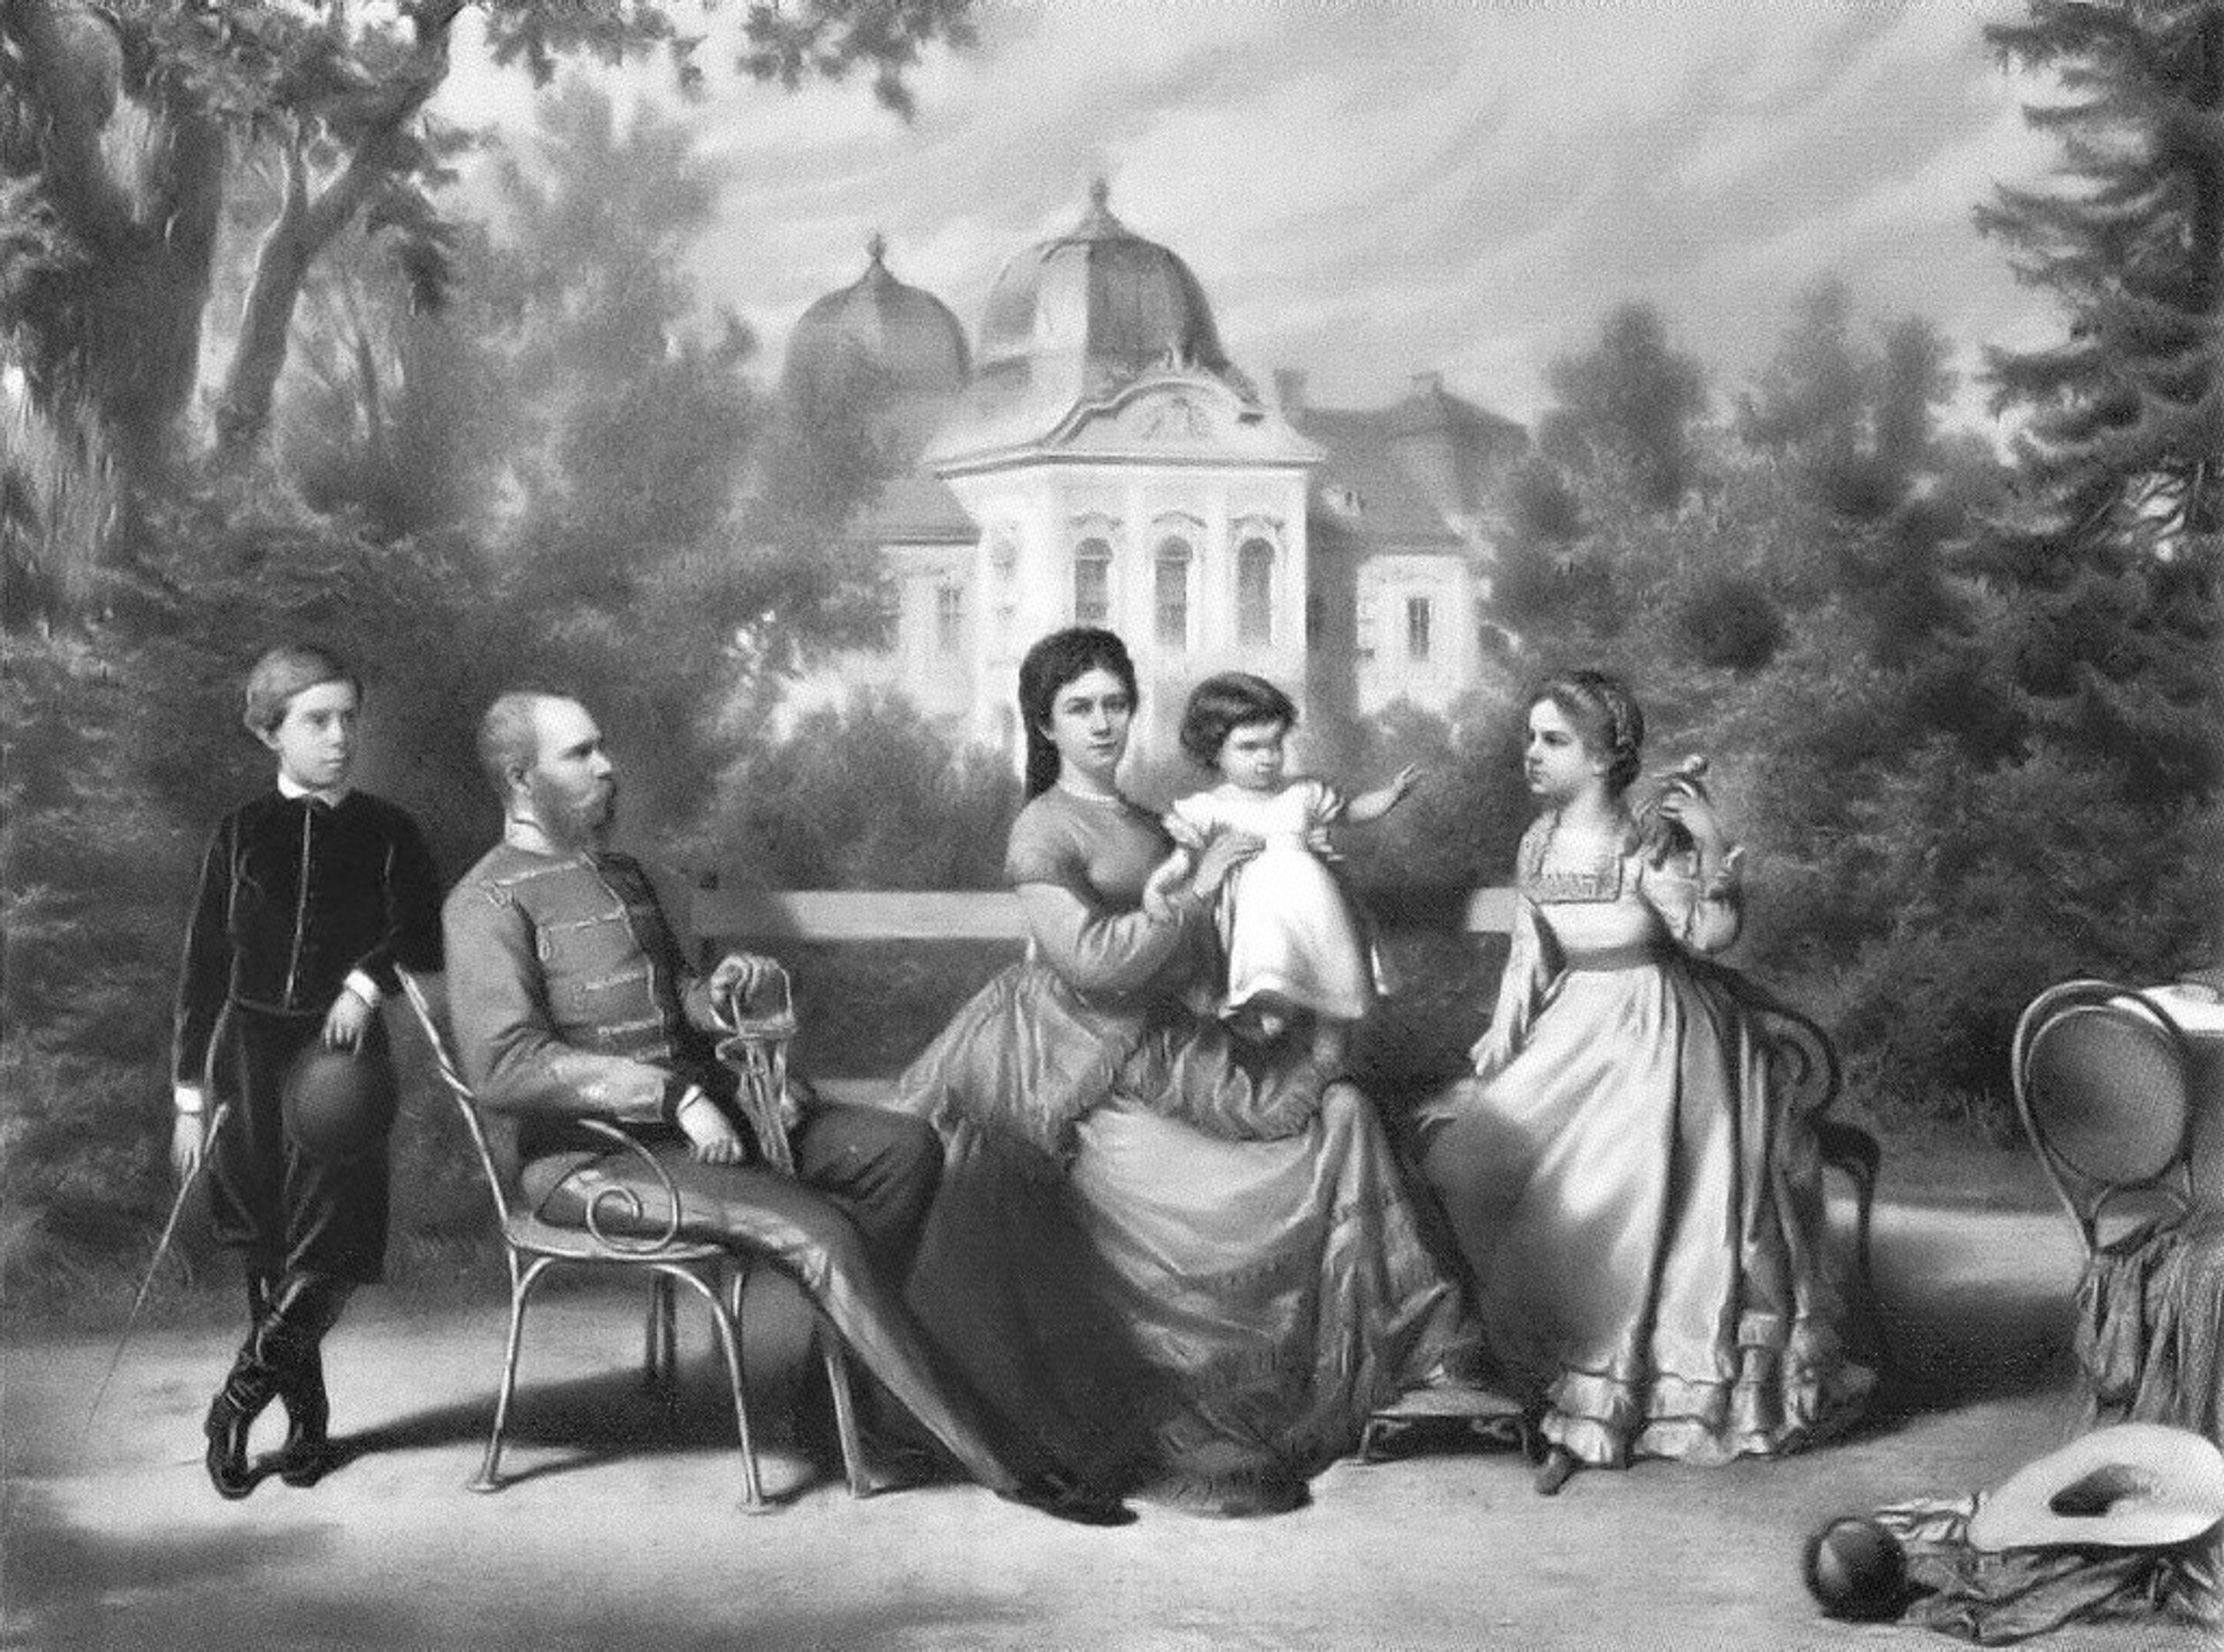 Lithografie van de keizerlijke familie in het Gödöllő-paleis (Hongarije) uit 1871. Van links naar